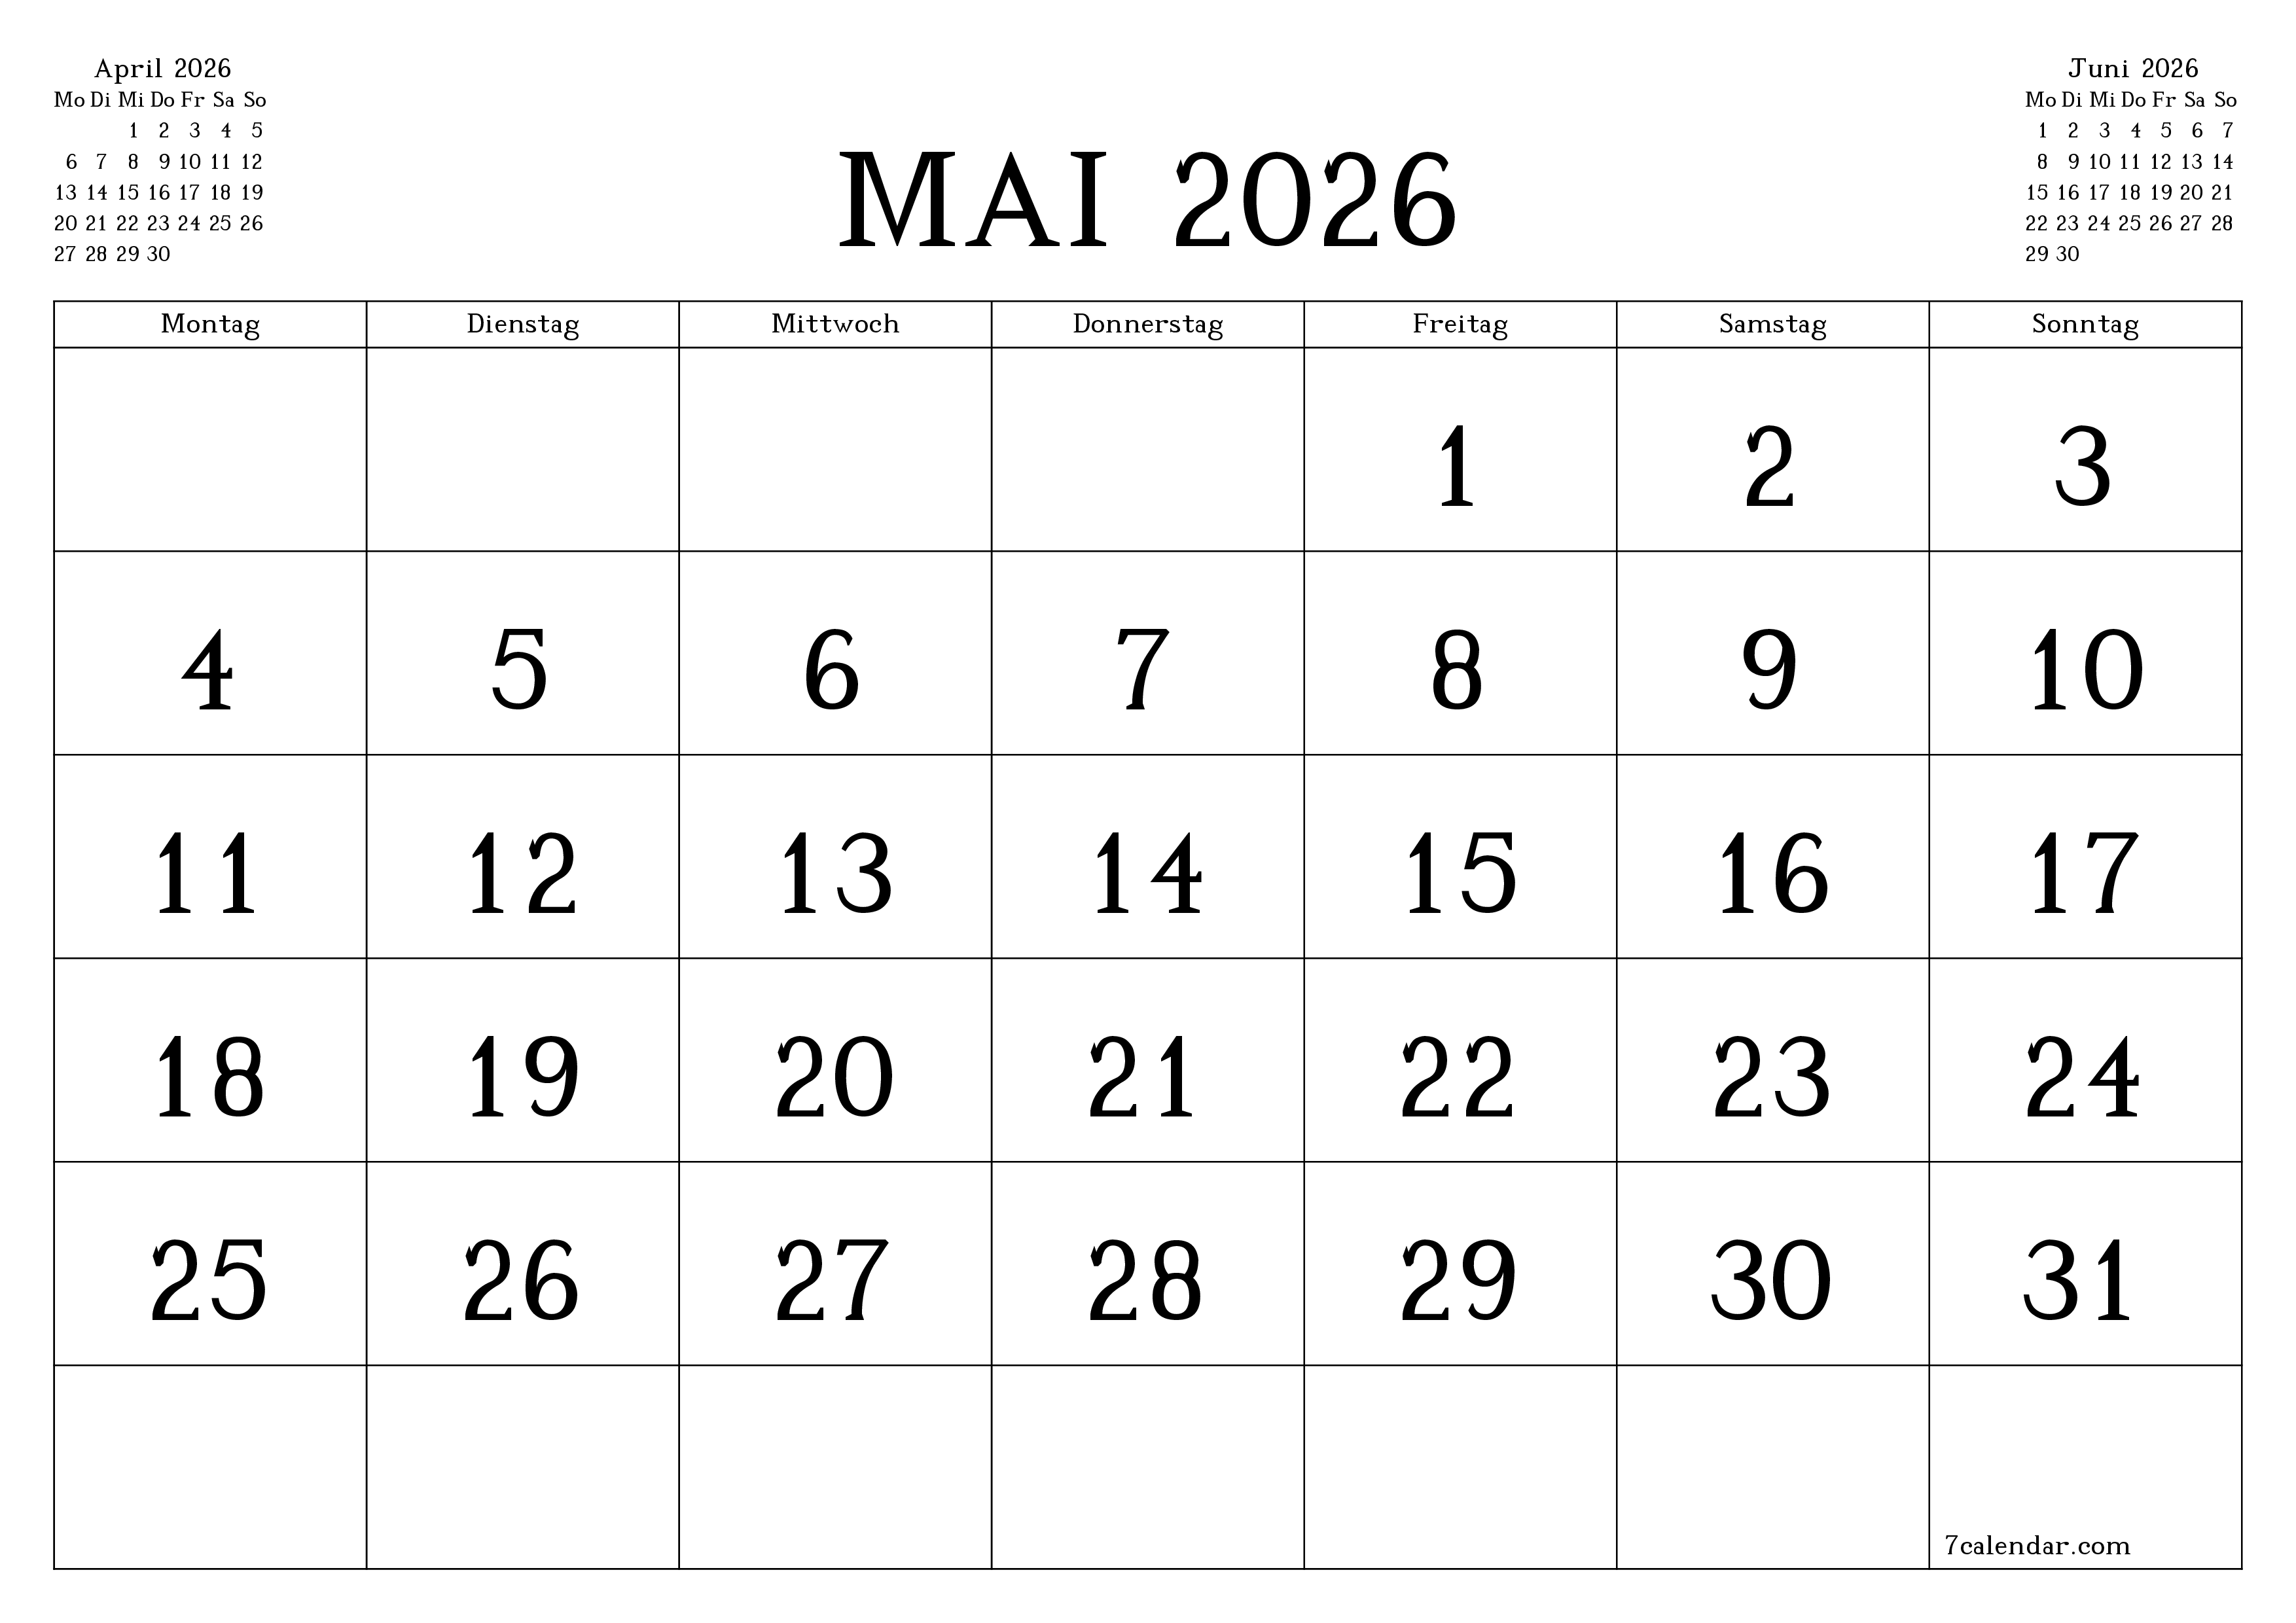 Monatsplaner für Monat Mai 2026 mit Notizen leeren, speichern und als PDF PNG German - 7calendar.com drucken